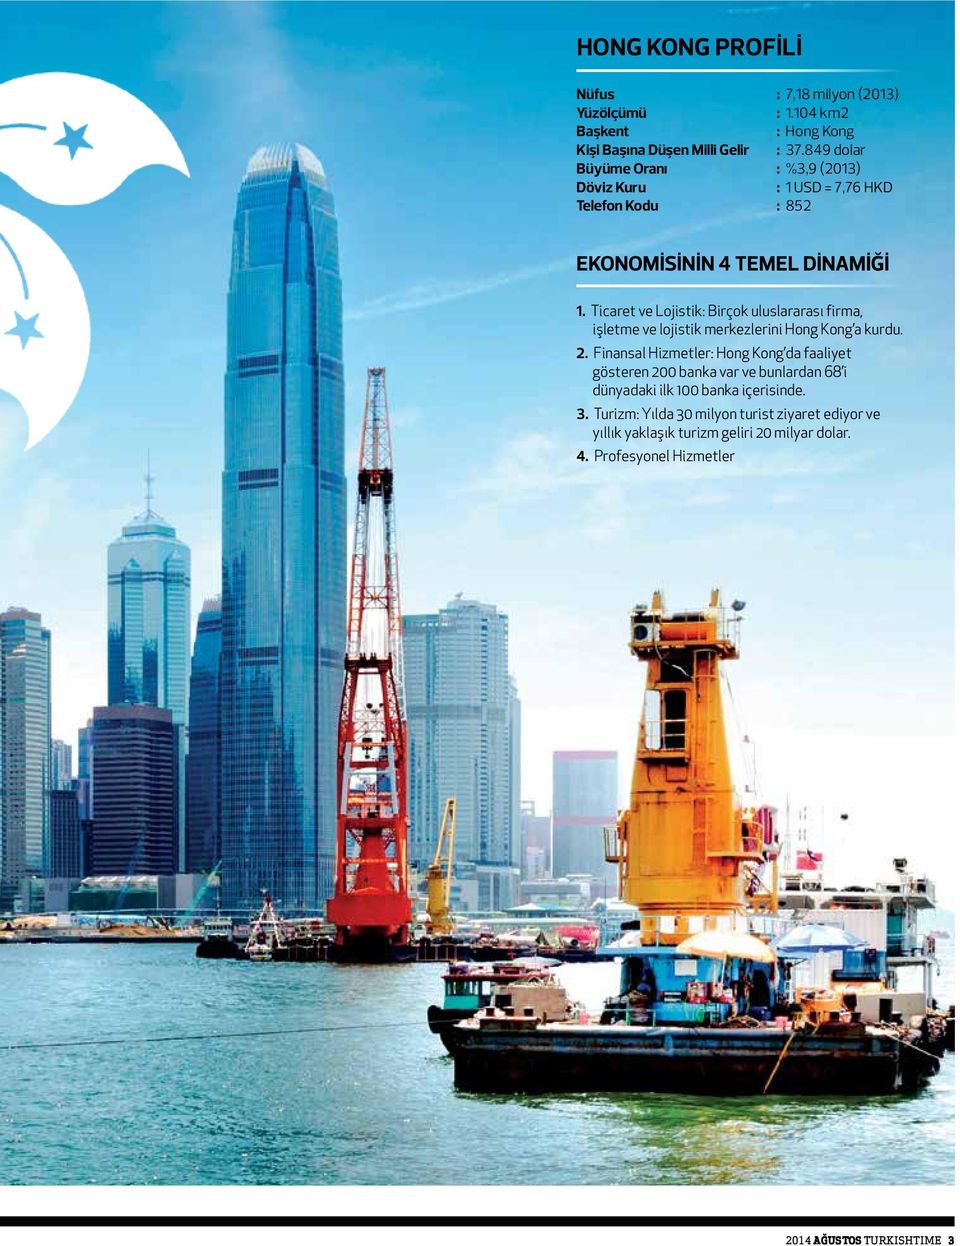 Ticaret ve Lojistik: Birçok uluslararası firma, işletme ve lojistik merkezlerini Hong Kong a kurdu. 2.